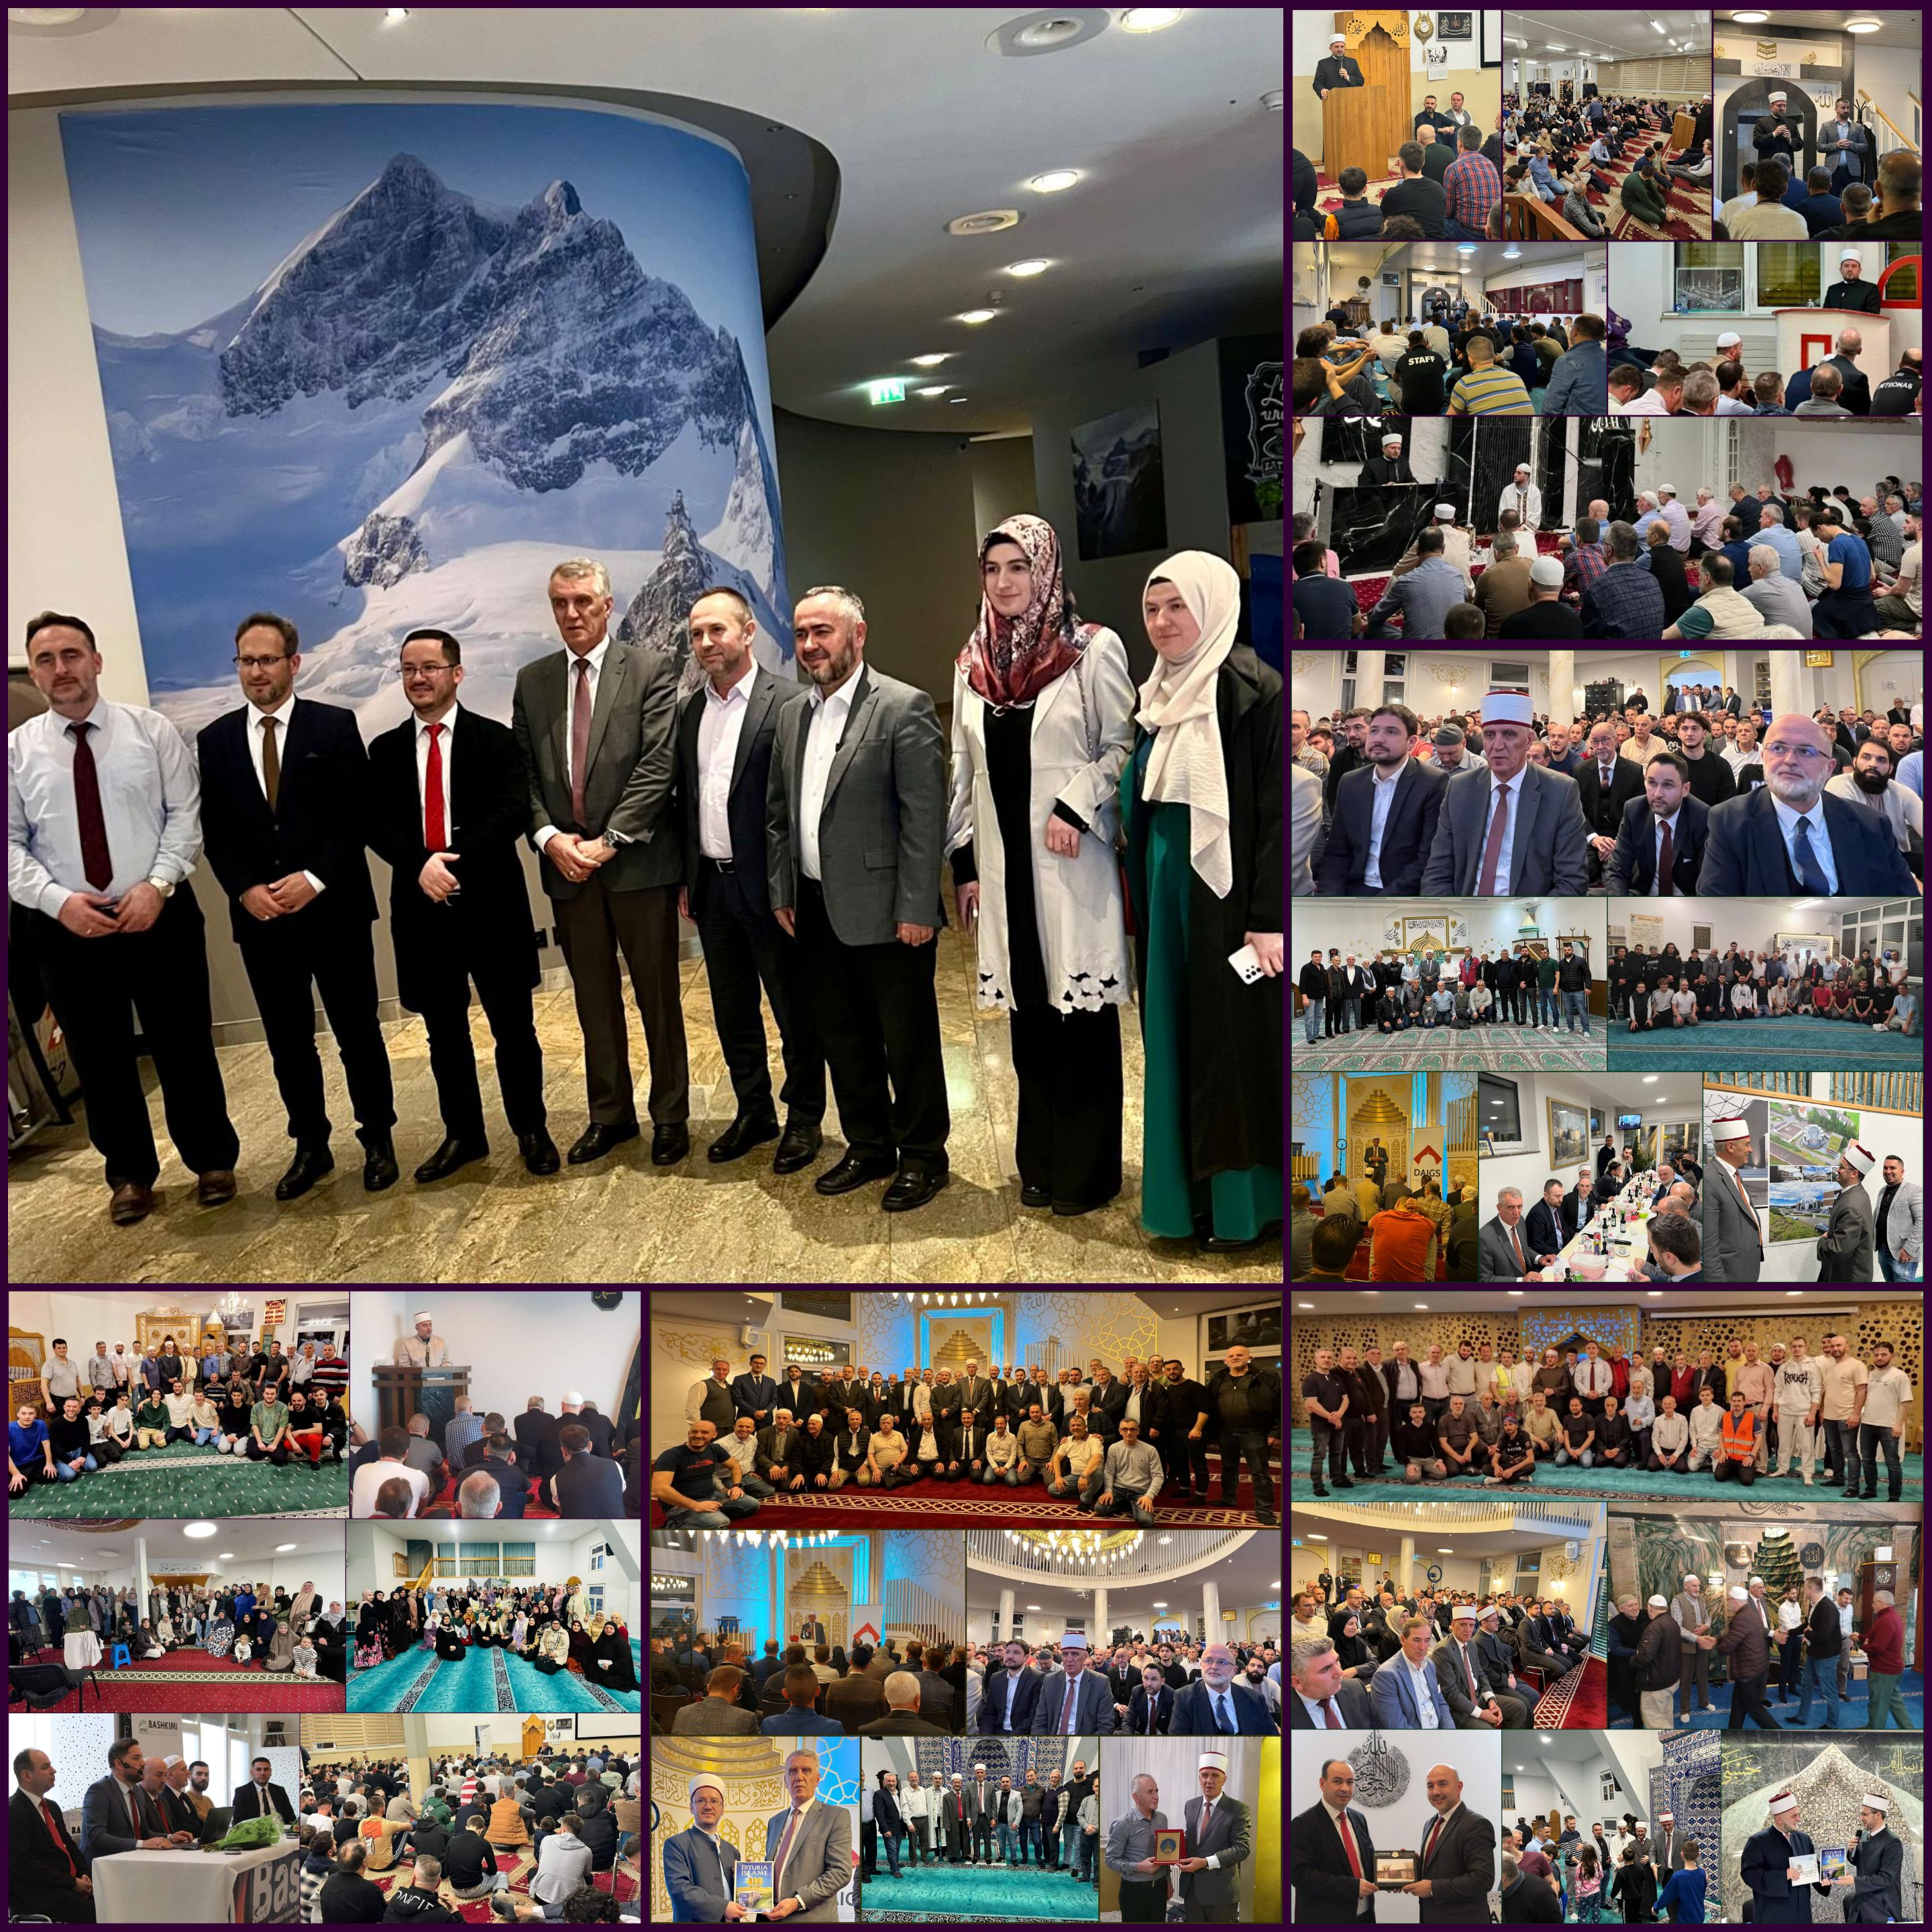 قام وفد رسمي من رئاسة المشيخة الإسلامية في دولة كوسوفا بزيارة أربعة أيام إلى سويسرا بهدف إحياء شهر رمضان في مساجد الجاليات الألبانية المسلمة